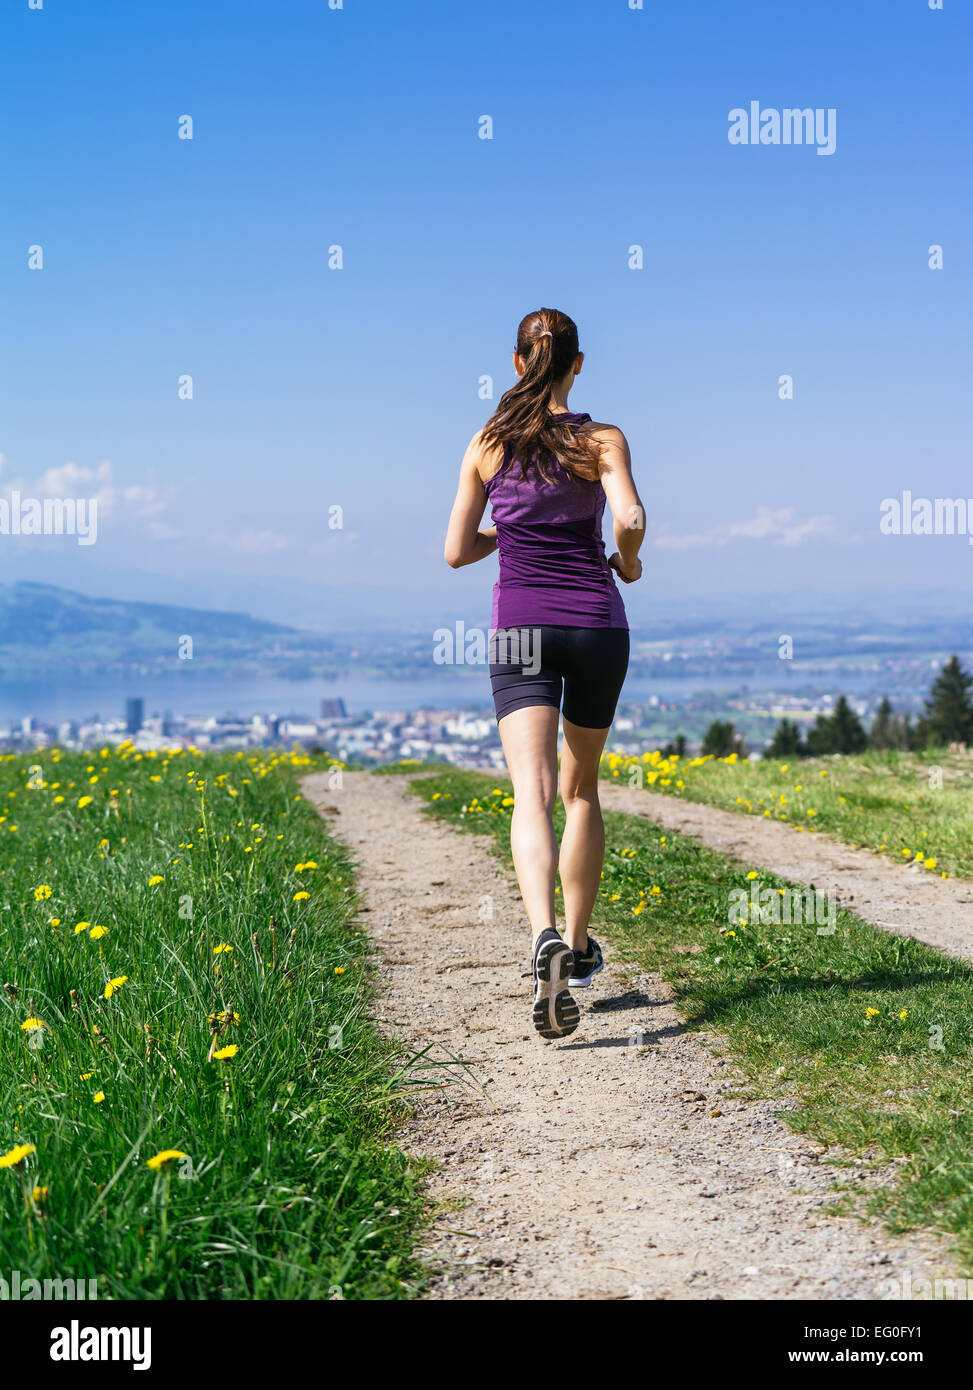 Photo d'une jeune femme le jogging et d'exercer sur un chemin du pays. Lac et la ville au loin. Léger flou de mouvement visible. Banque D'Images